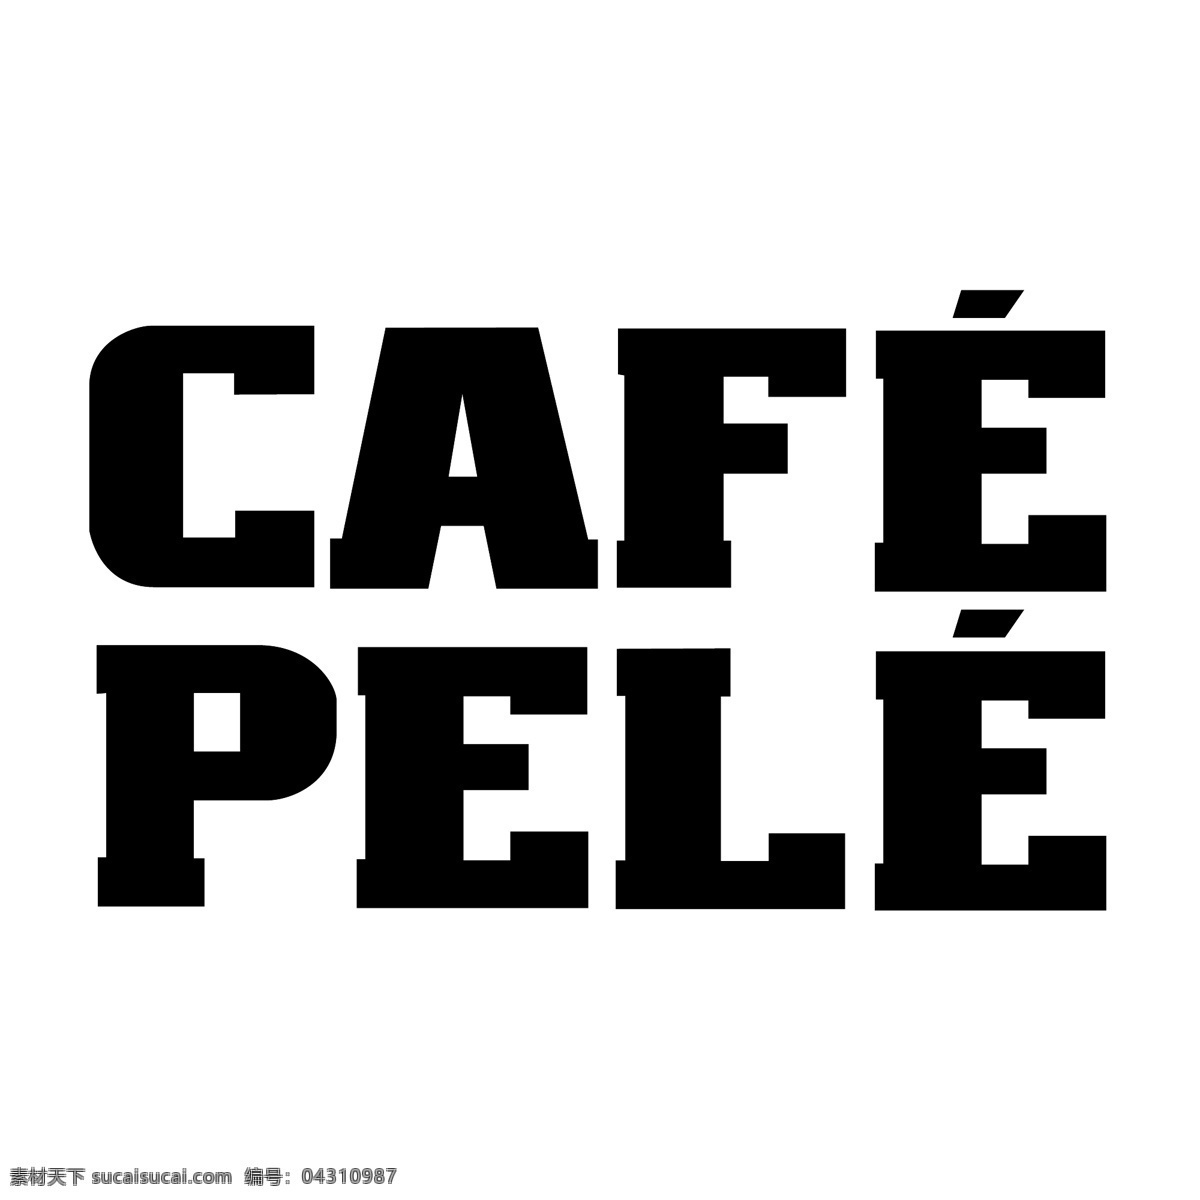 咖啡 咖啡馆 咖啡厅设计 图形矢量 咖啡馆的贝利 贝利 矢量 艺术 咖啡馆的咖啡 咖啡馆的图形 在咖啡馆自由 免费 自由 在咖啡馆 里 矢量图 建筑家居